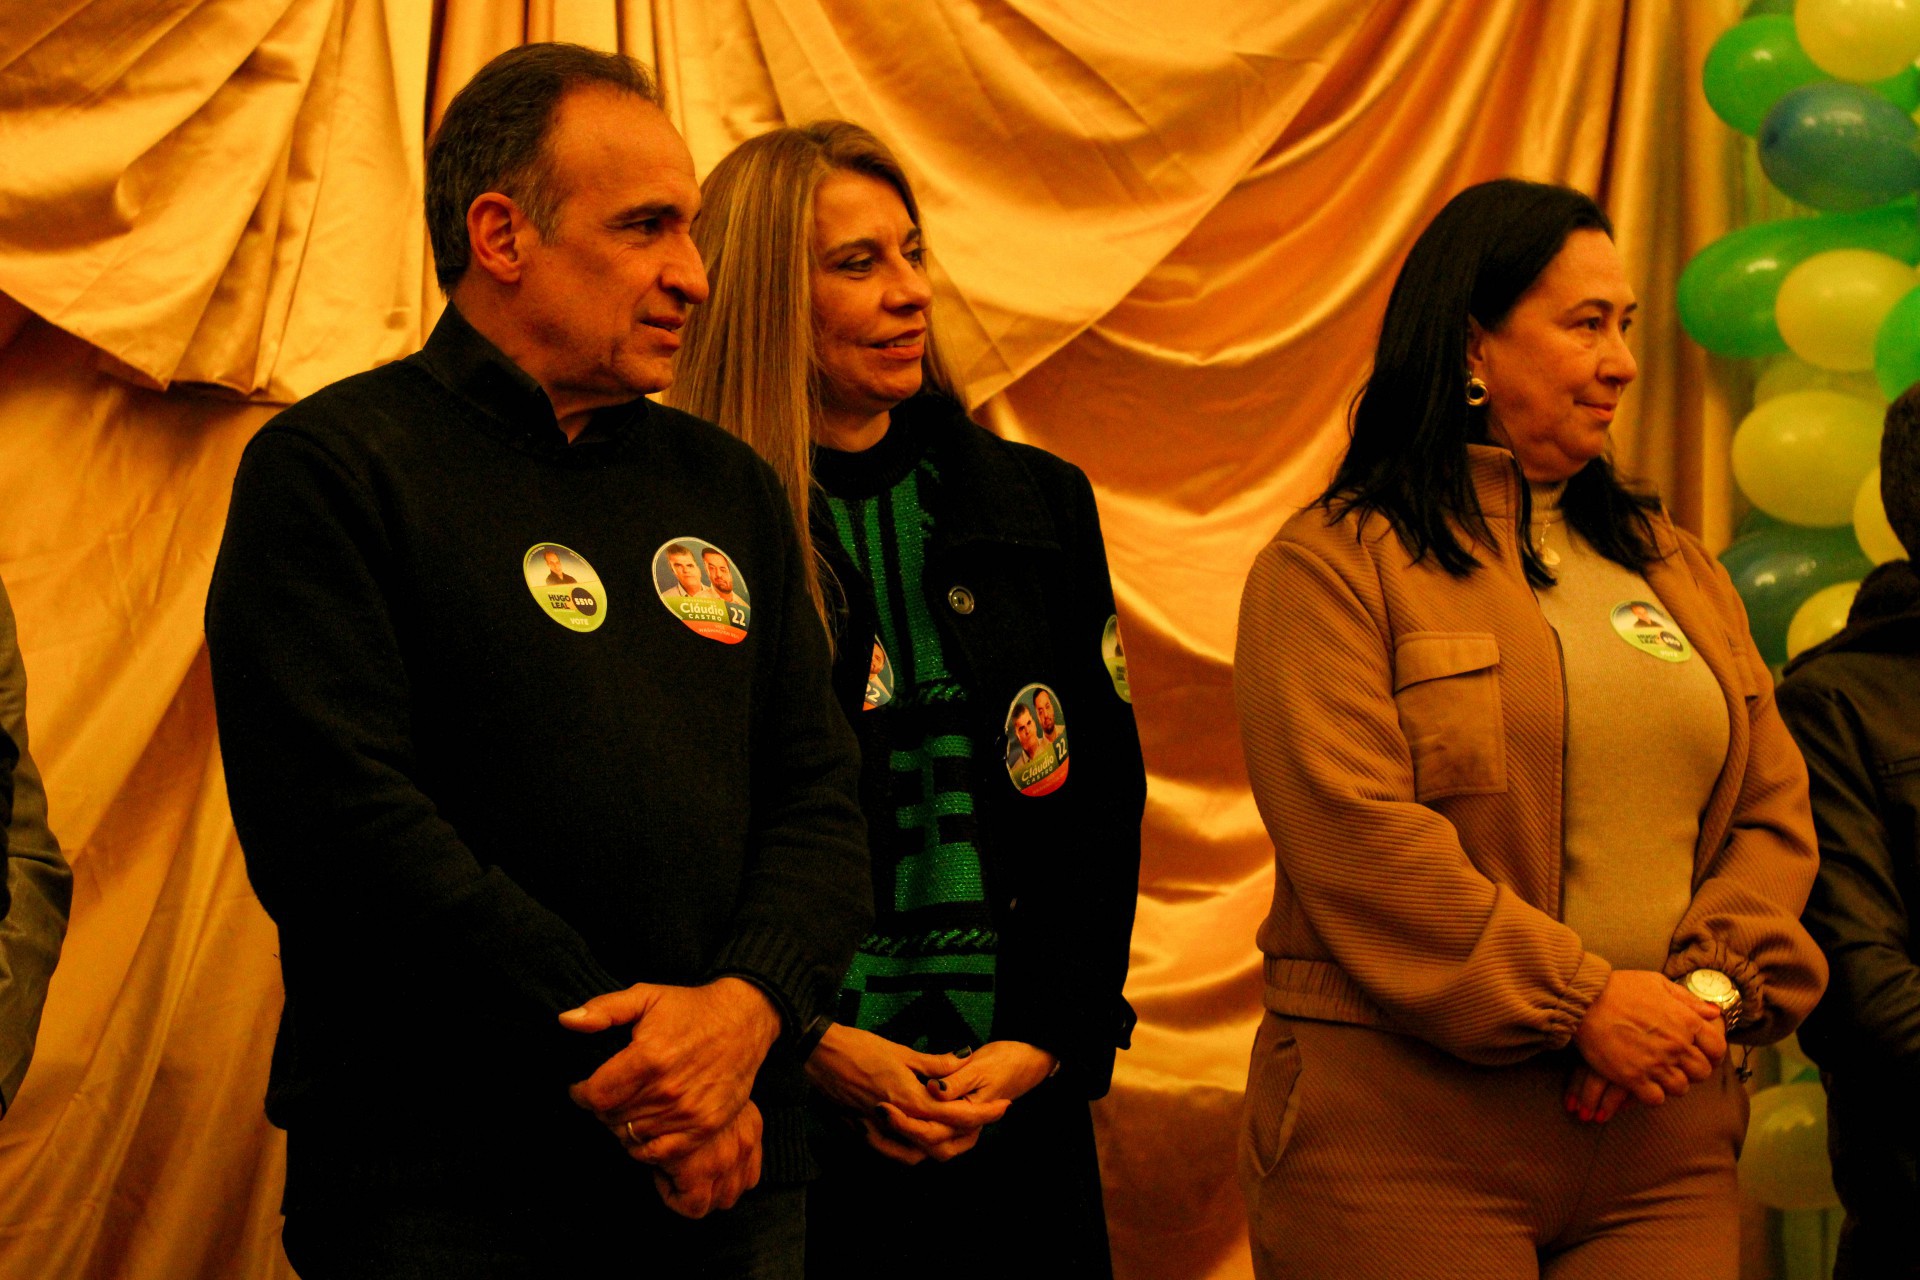 O Deputado Hugo Leal acompanhado da esposa Louise e da vereadora de Teresópolis Erika Marra - Nathalia Schumaker